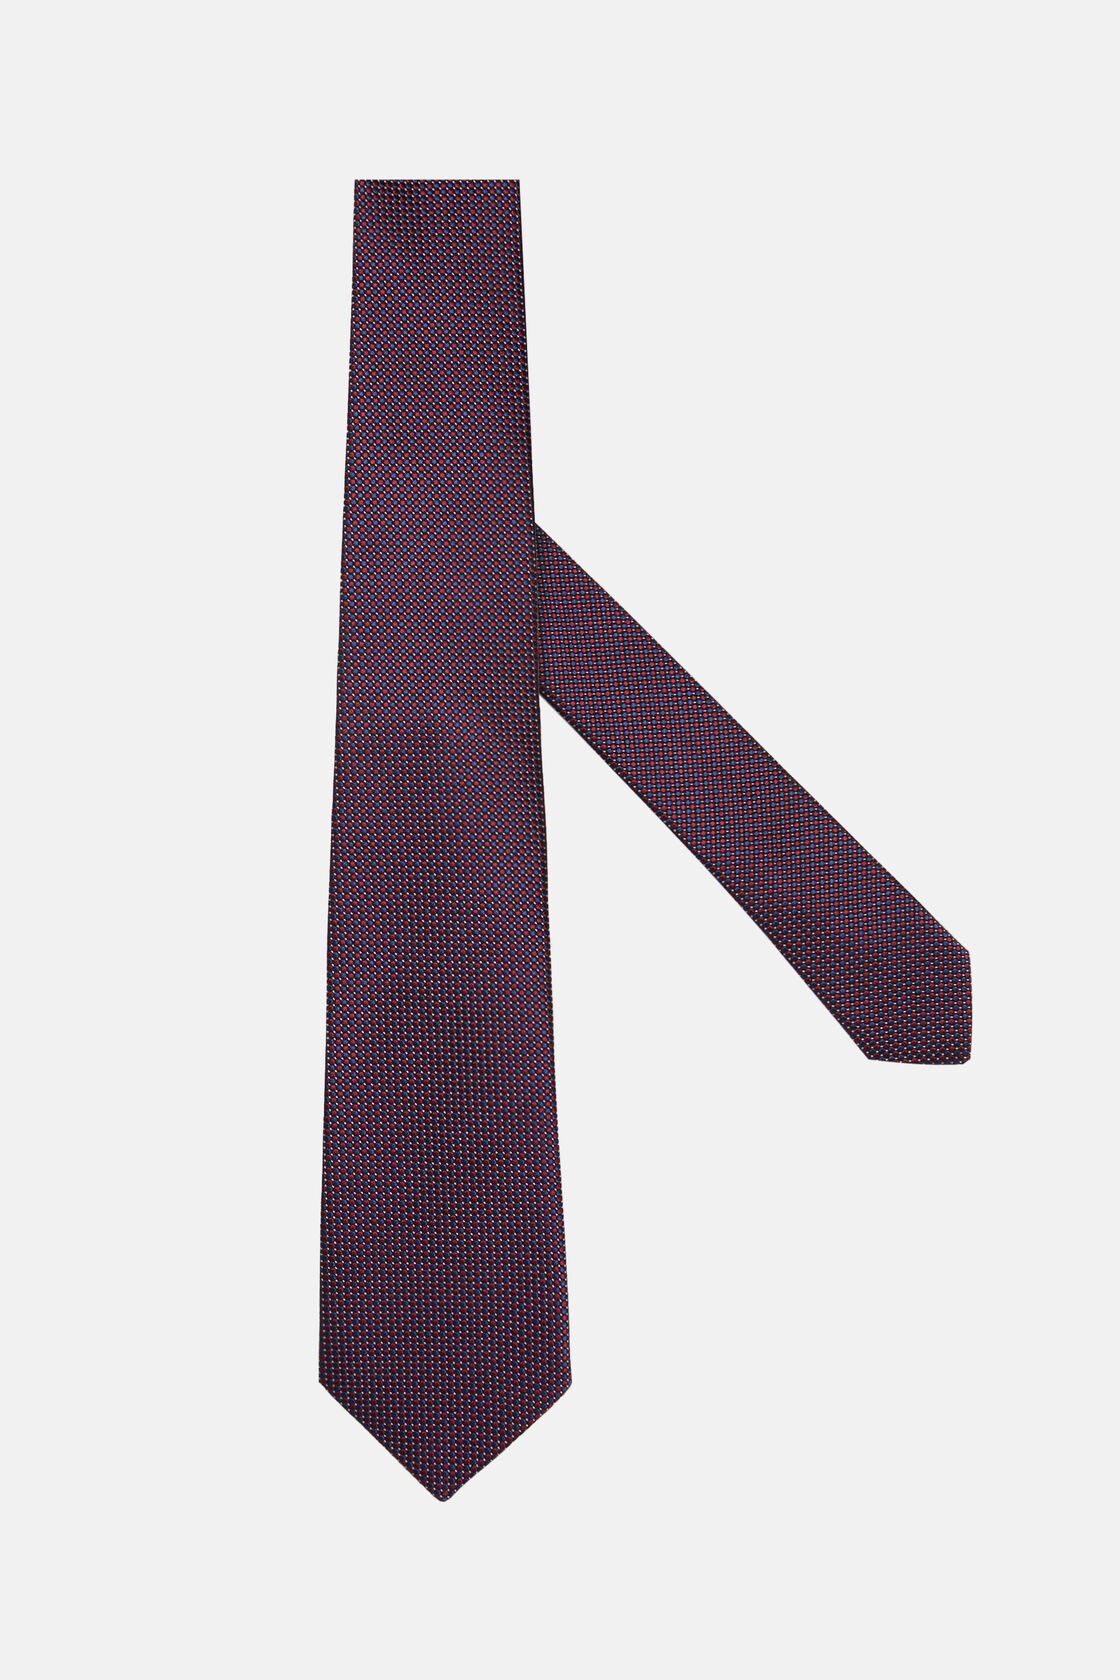 Pöttyös nyakkendő selyemkeverékből, Burgundy, hi-res